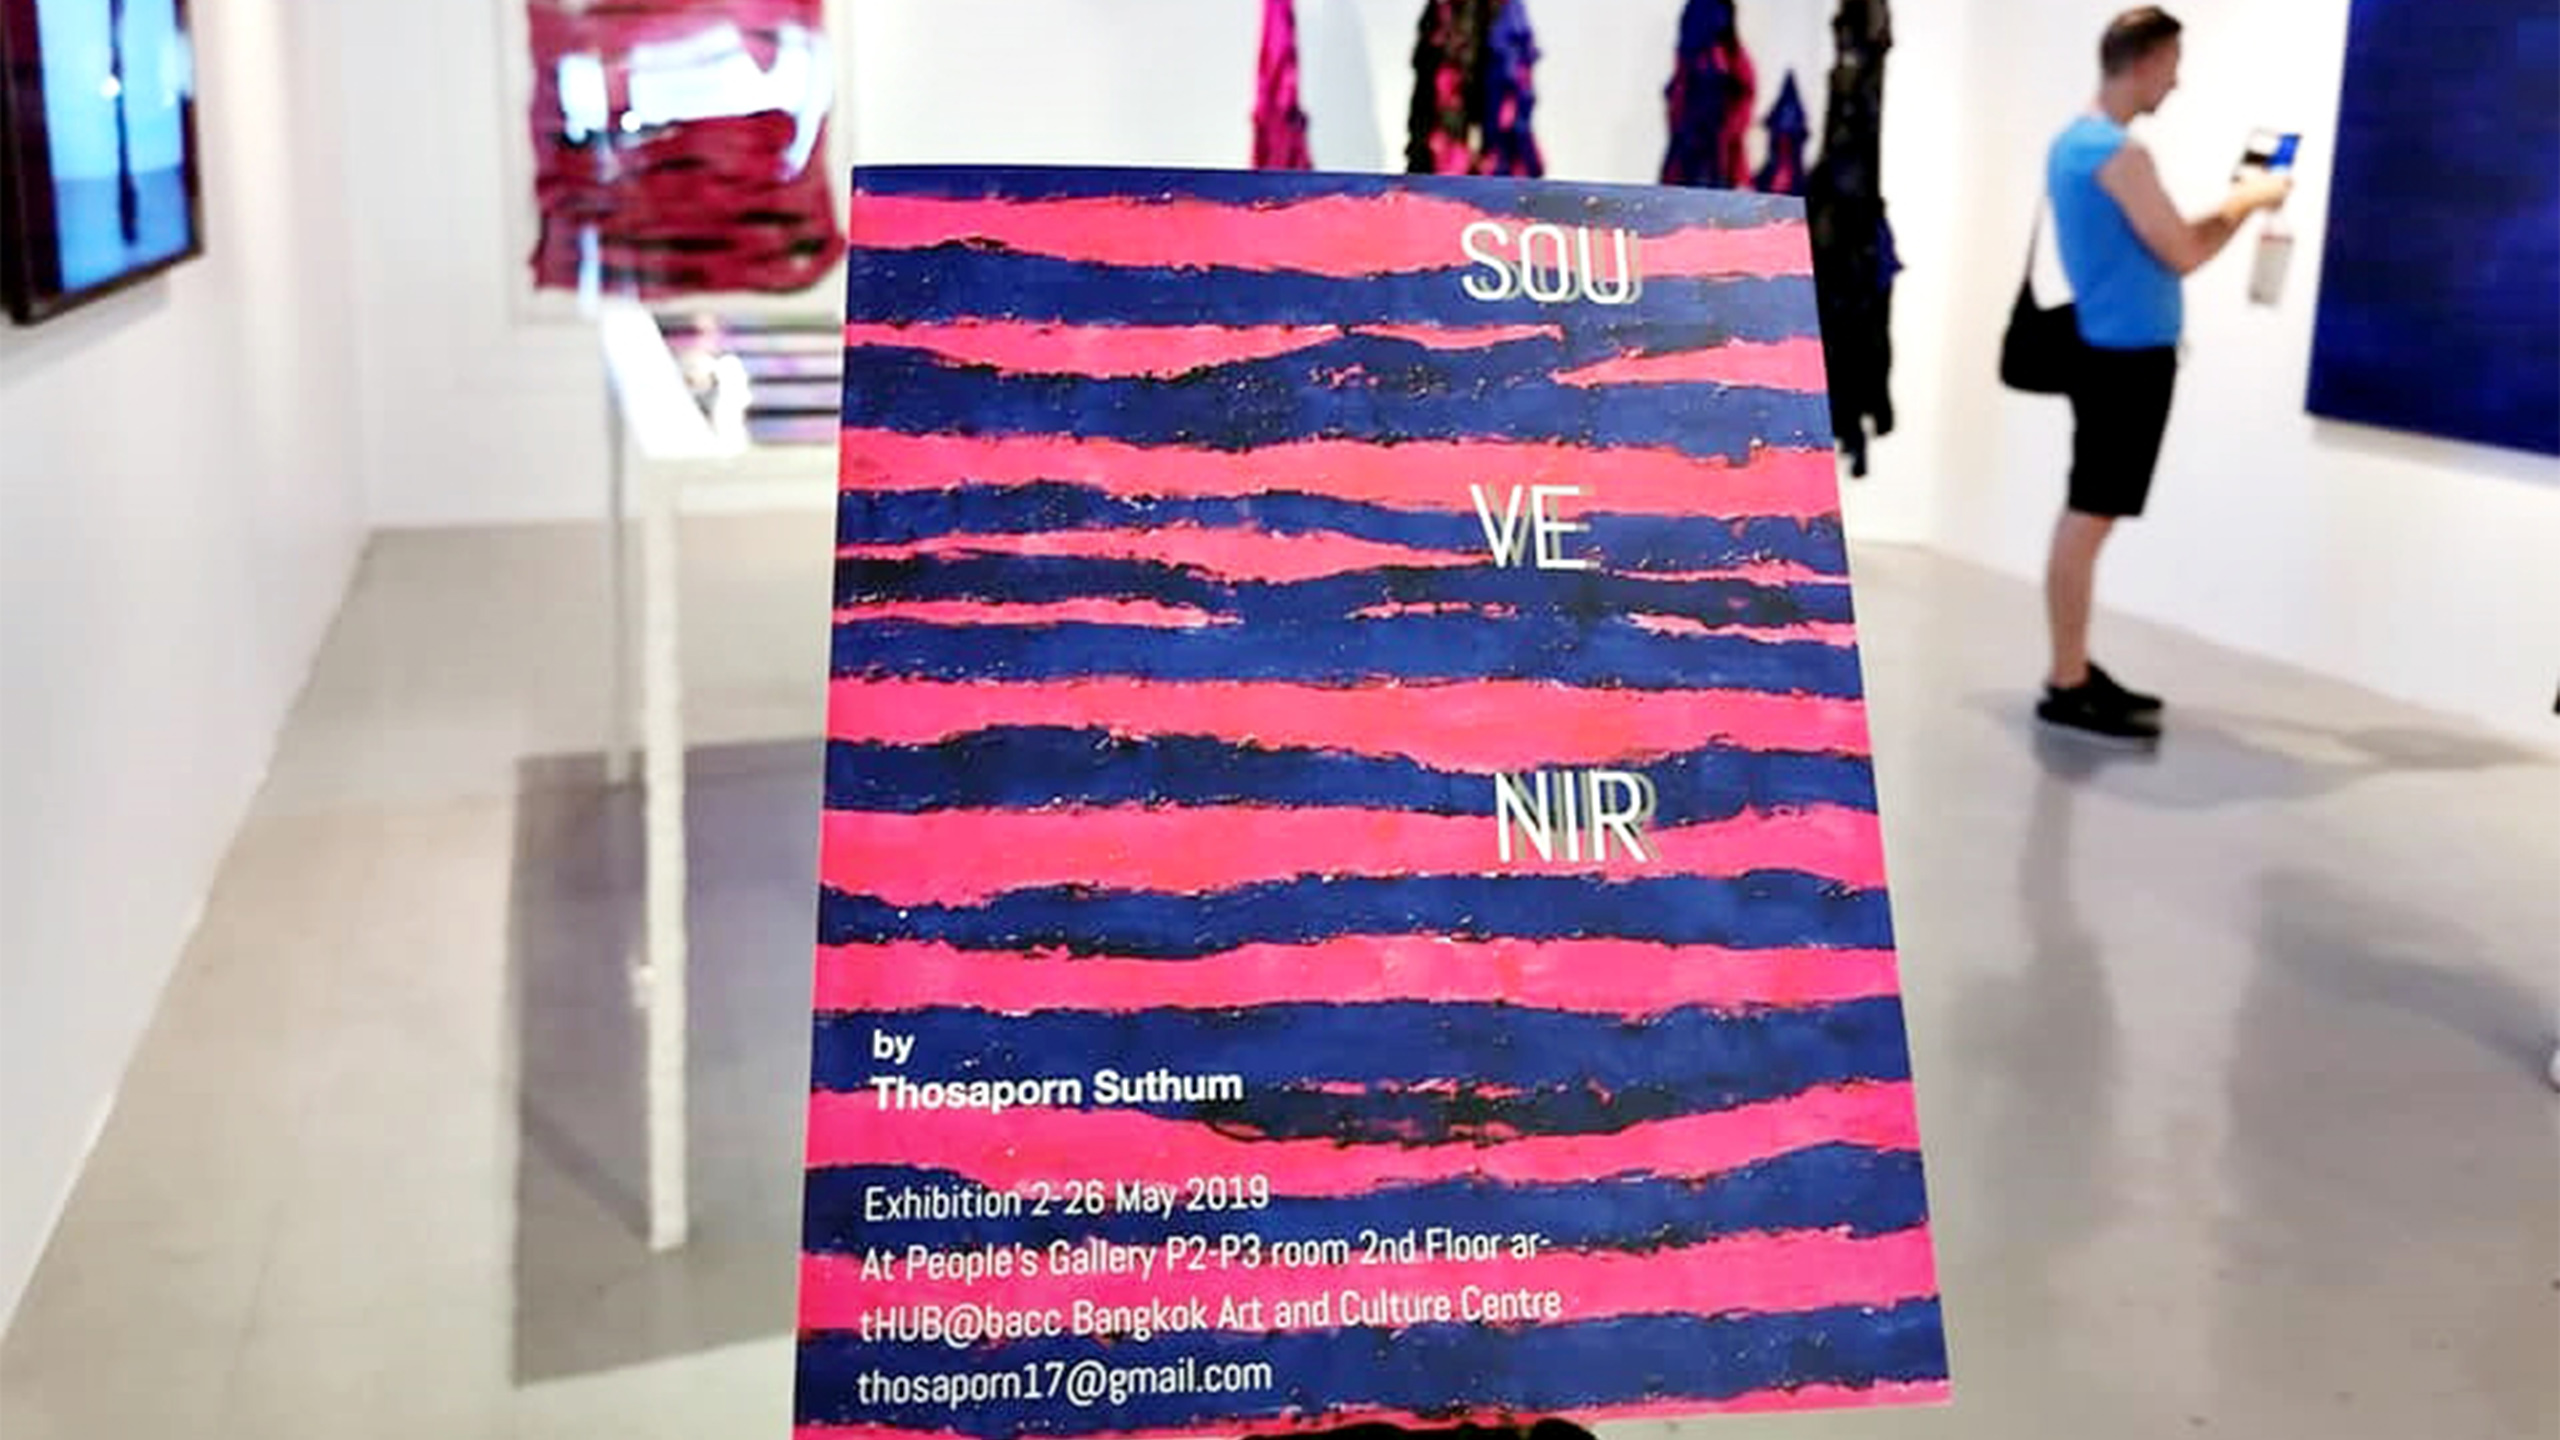 SOU VE NIR Exhibition By Thosaporn Suthum ทศพร สุธรรม